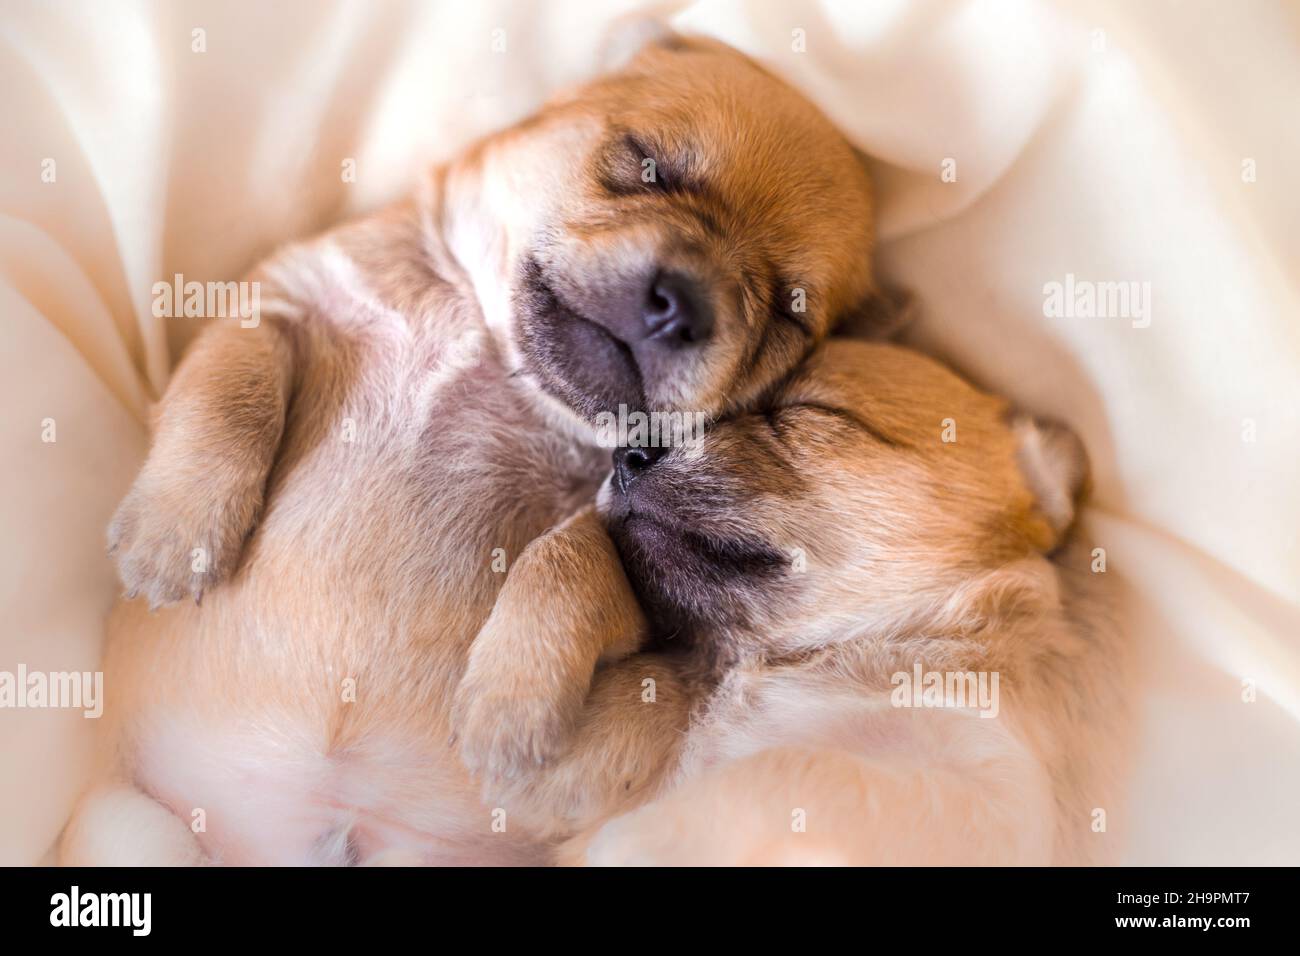 Cuccioli neonati in sogni dolci che dormono insieme Foto Stock